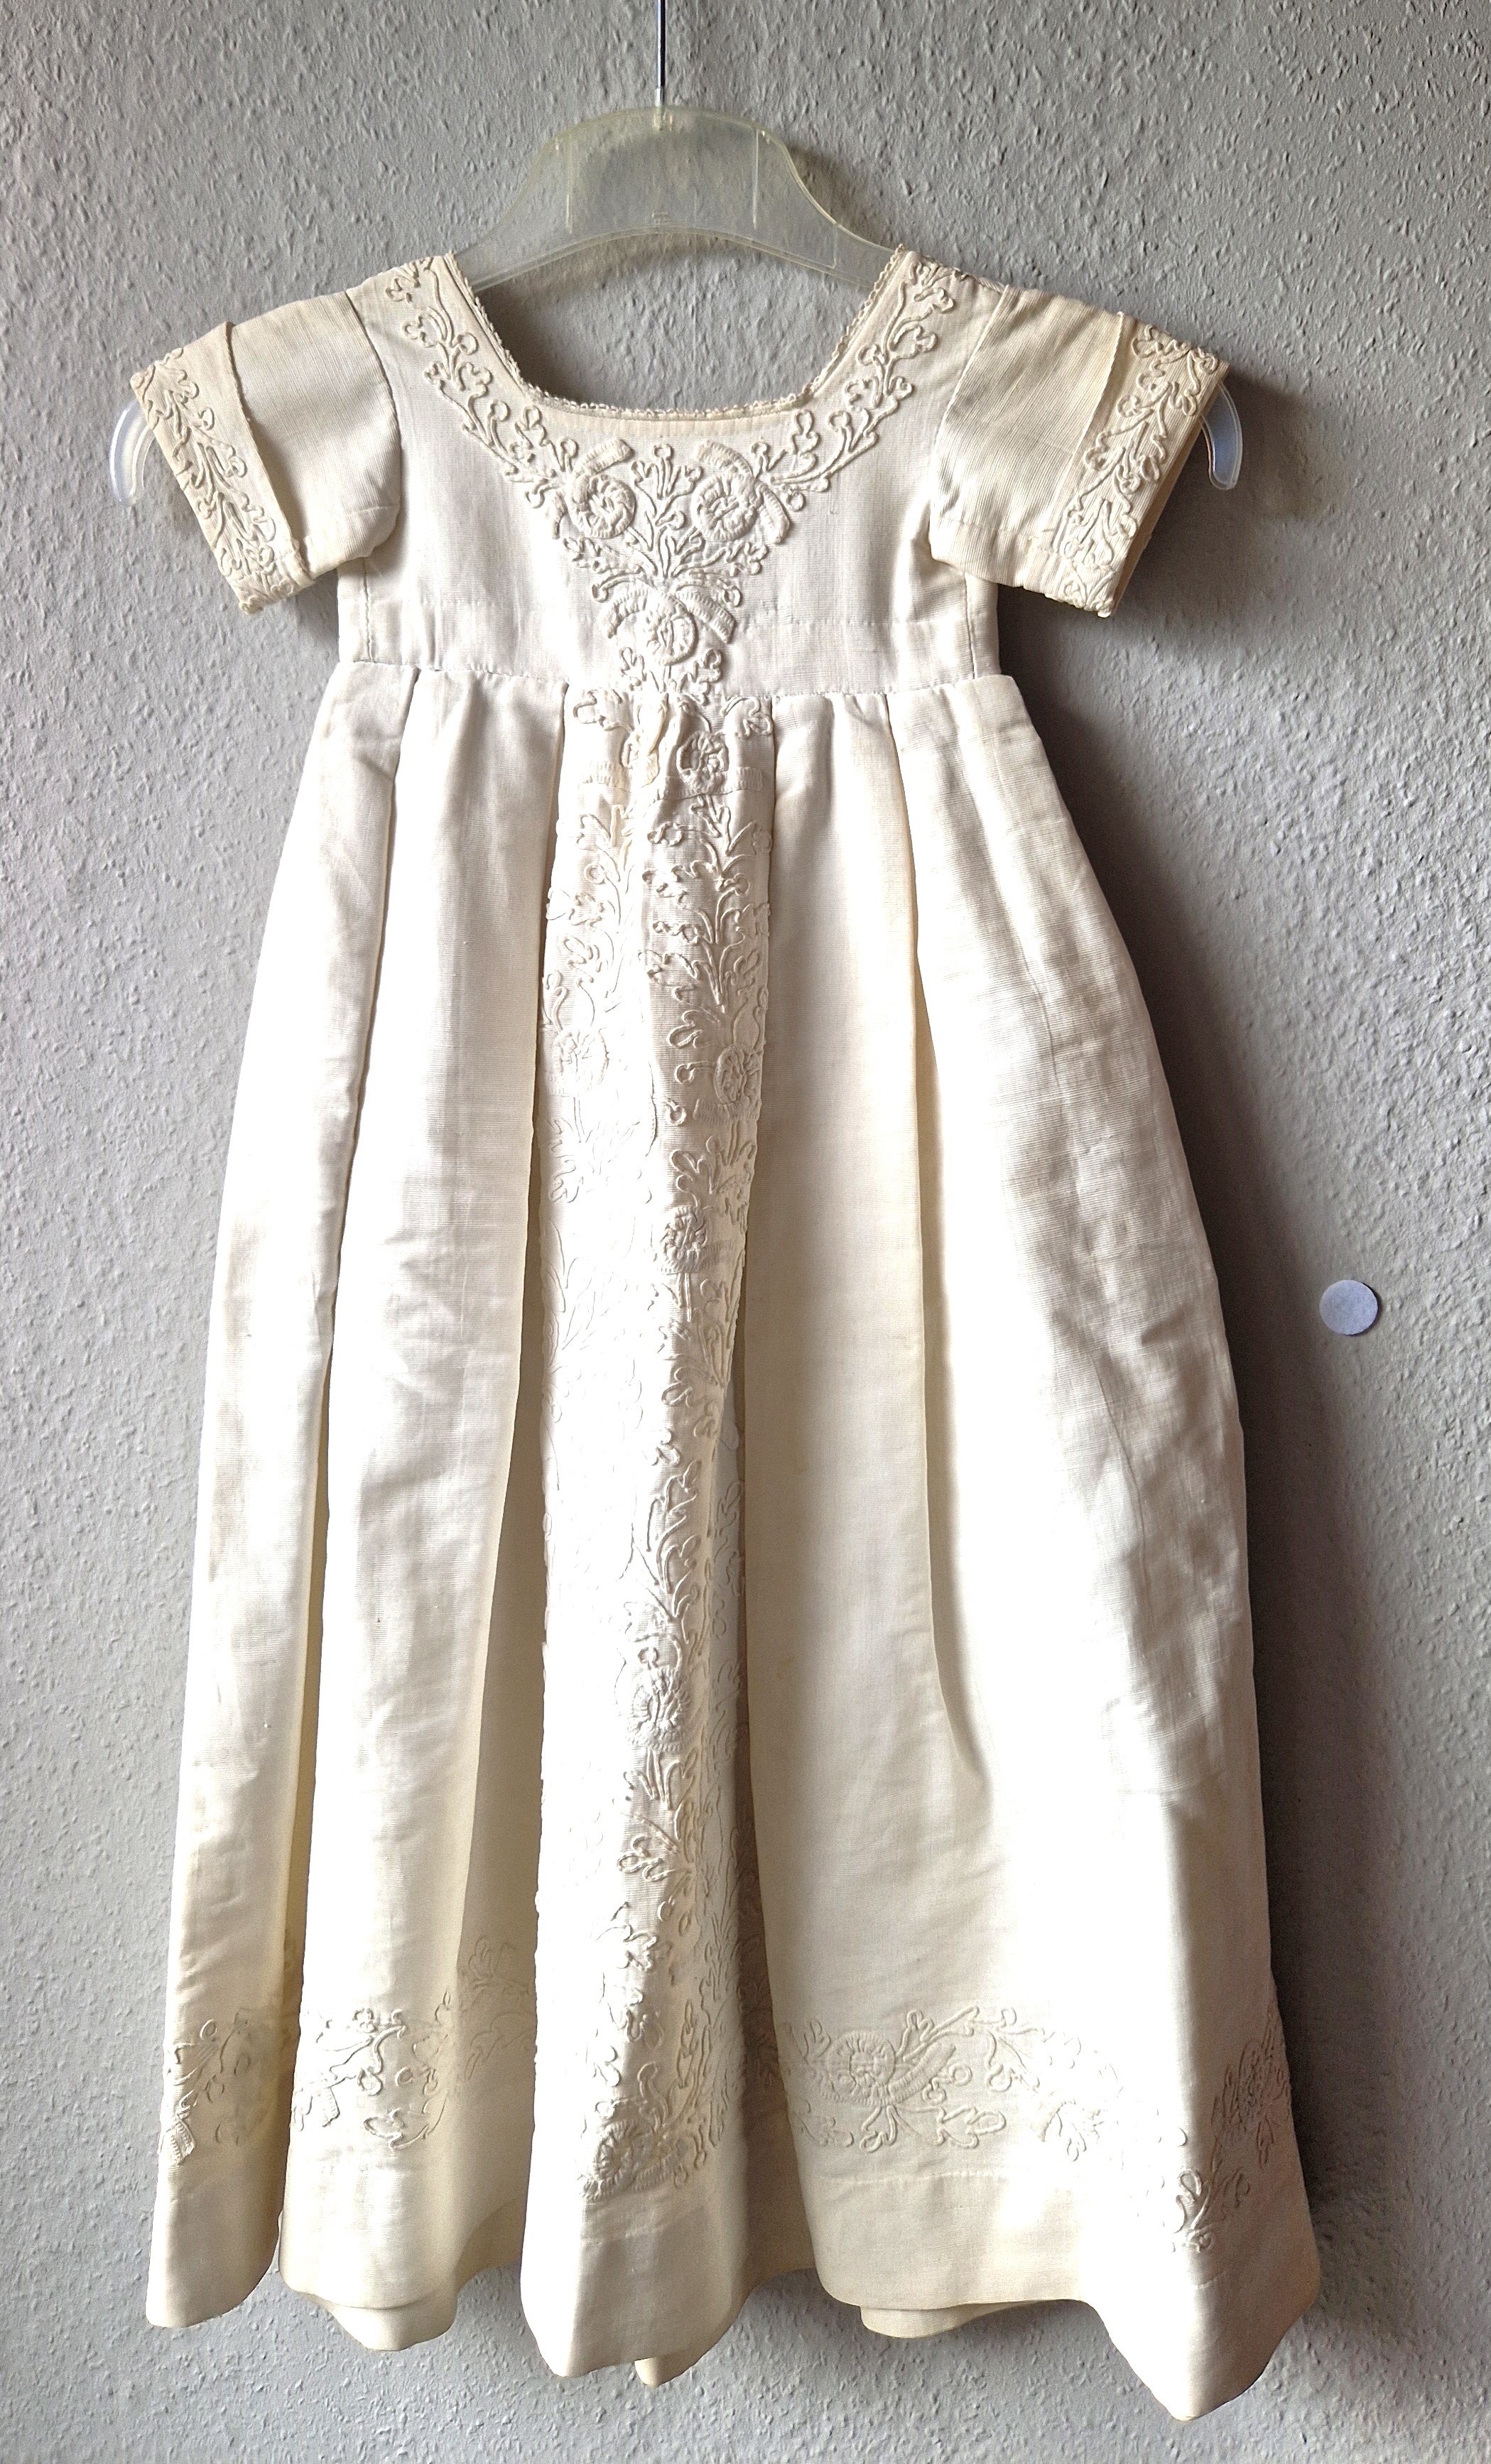 Kinderkleid (Taufkleid) aus Rips mit Weißstickerei, um 1910-1930 (?) (Schloß Wernigerode GmbH RR-R)